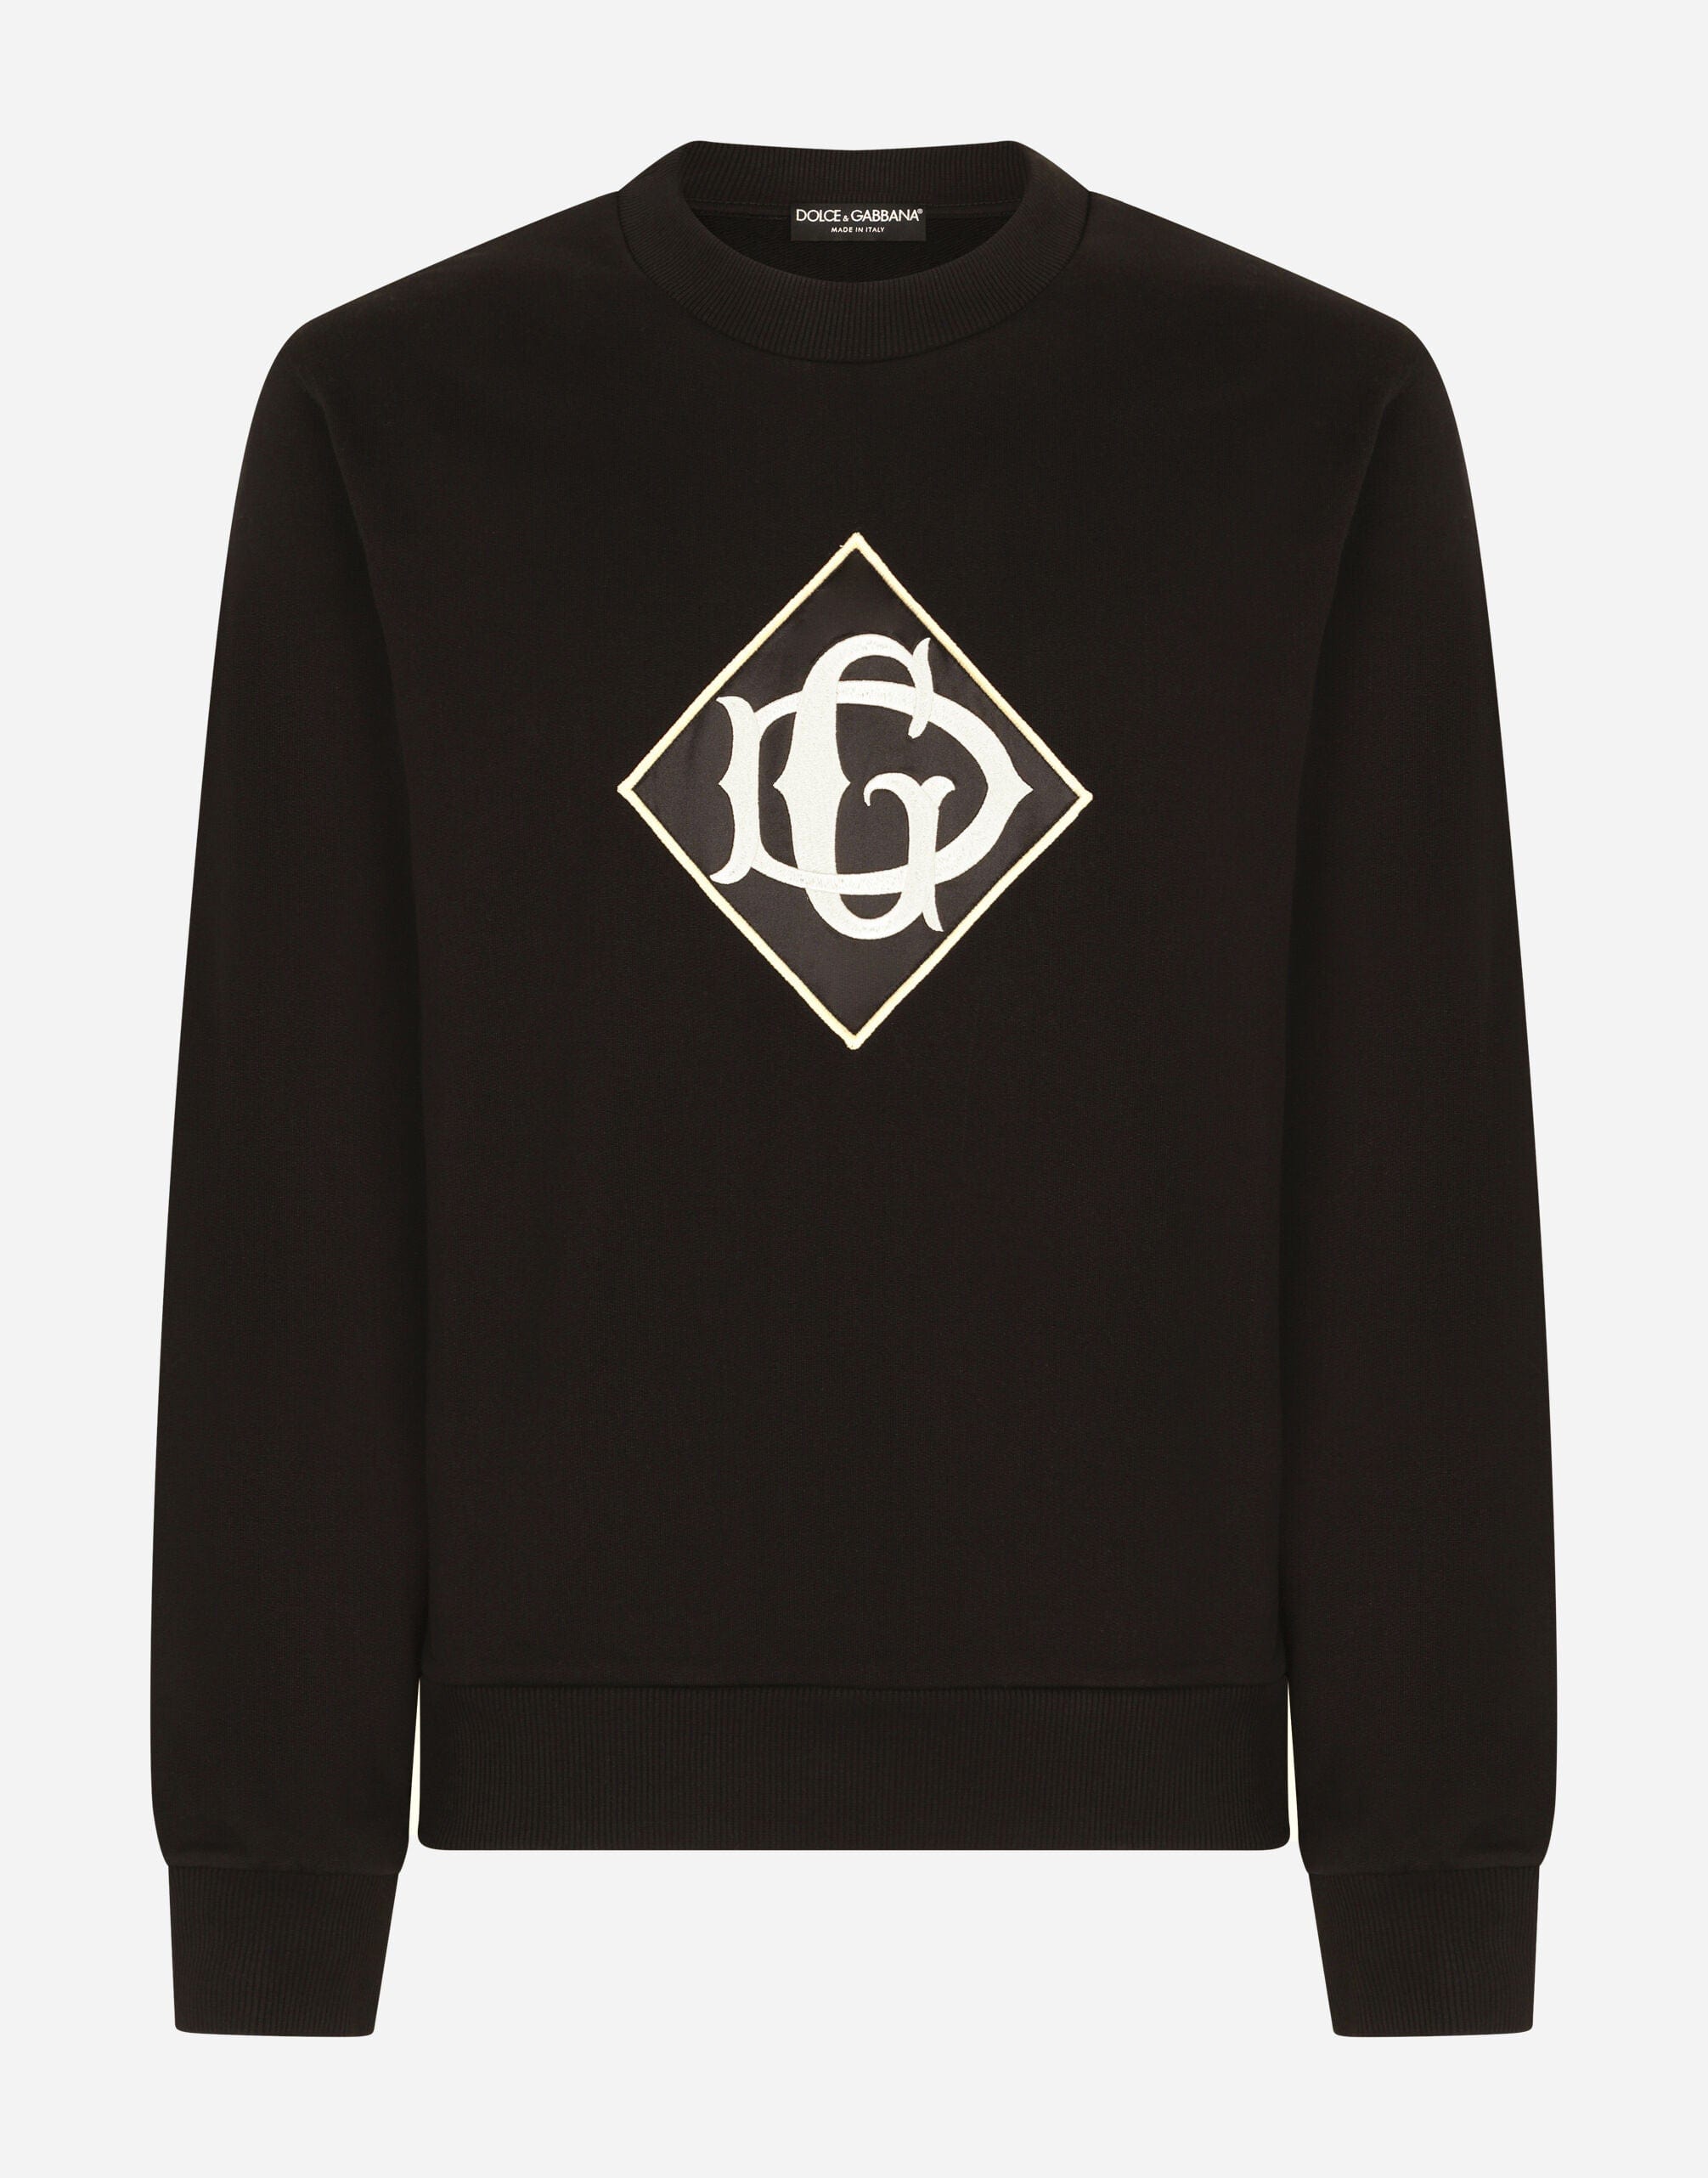 Dolce & Gabbana Cotton Sweatshirt With DG Logo